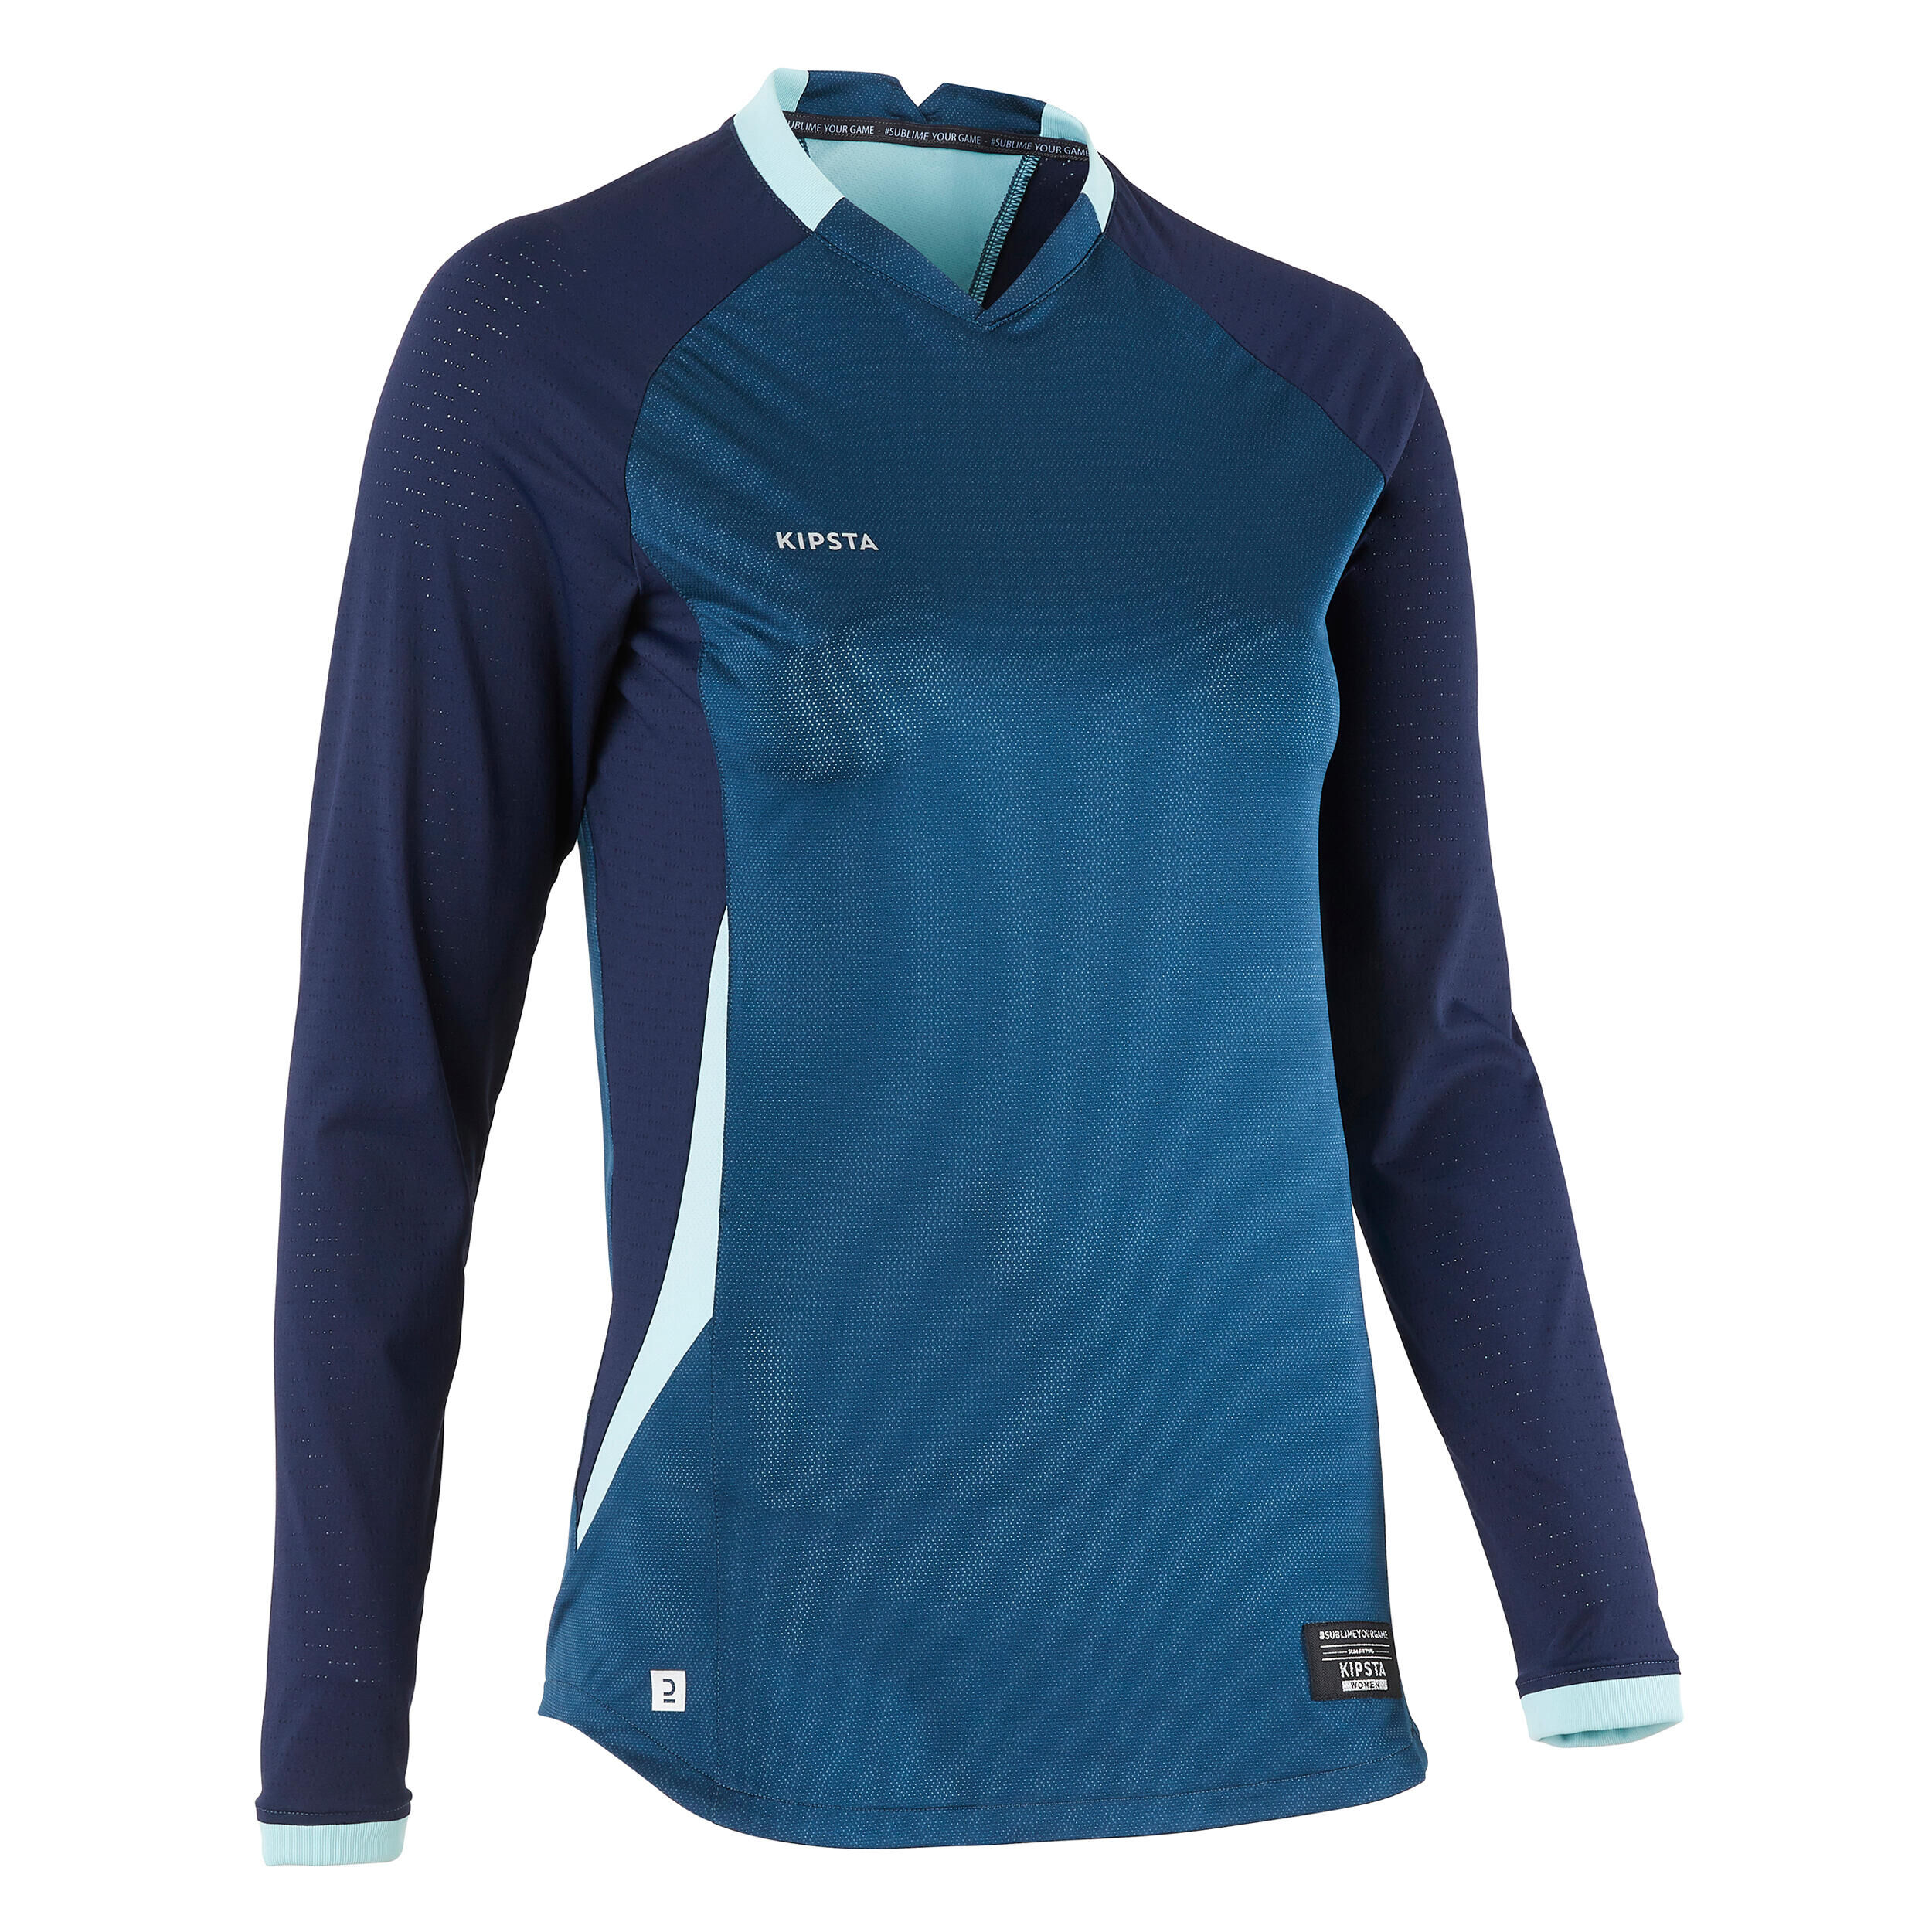 KIPSTA Women's Long-Sleeved Slim-Cut Football Shirt - Blue